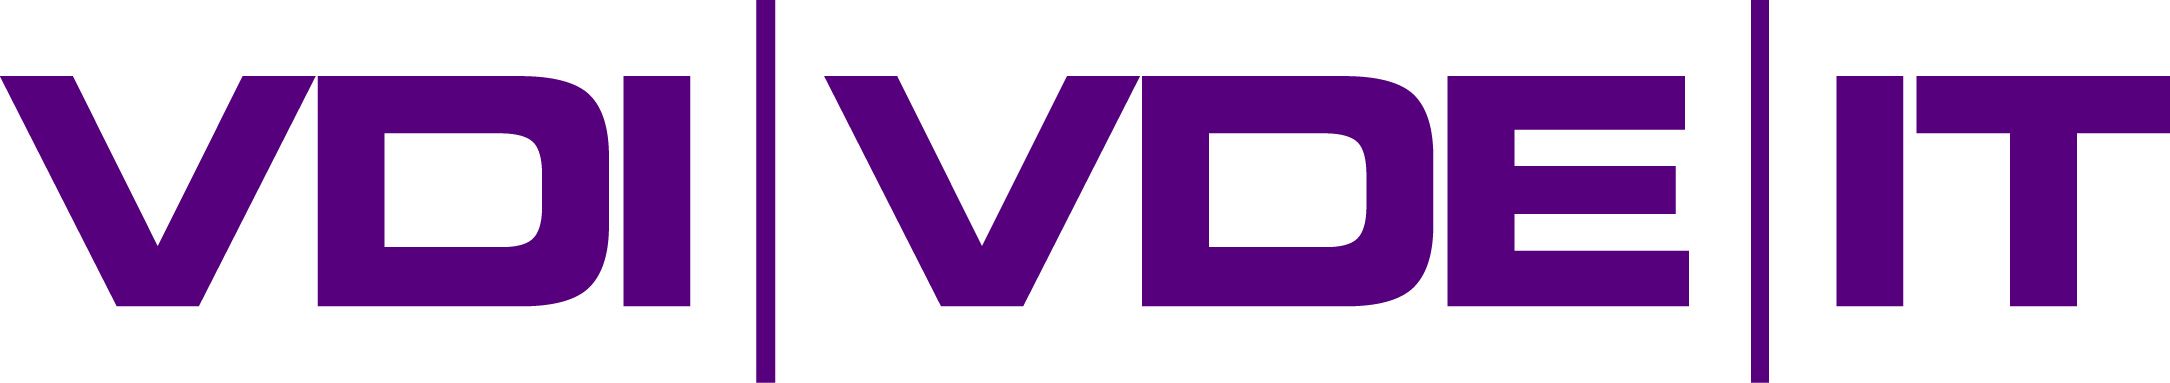 Logo VDIVDE-IT